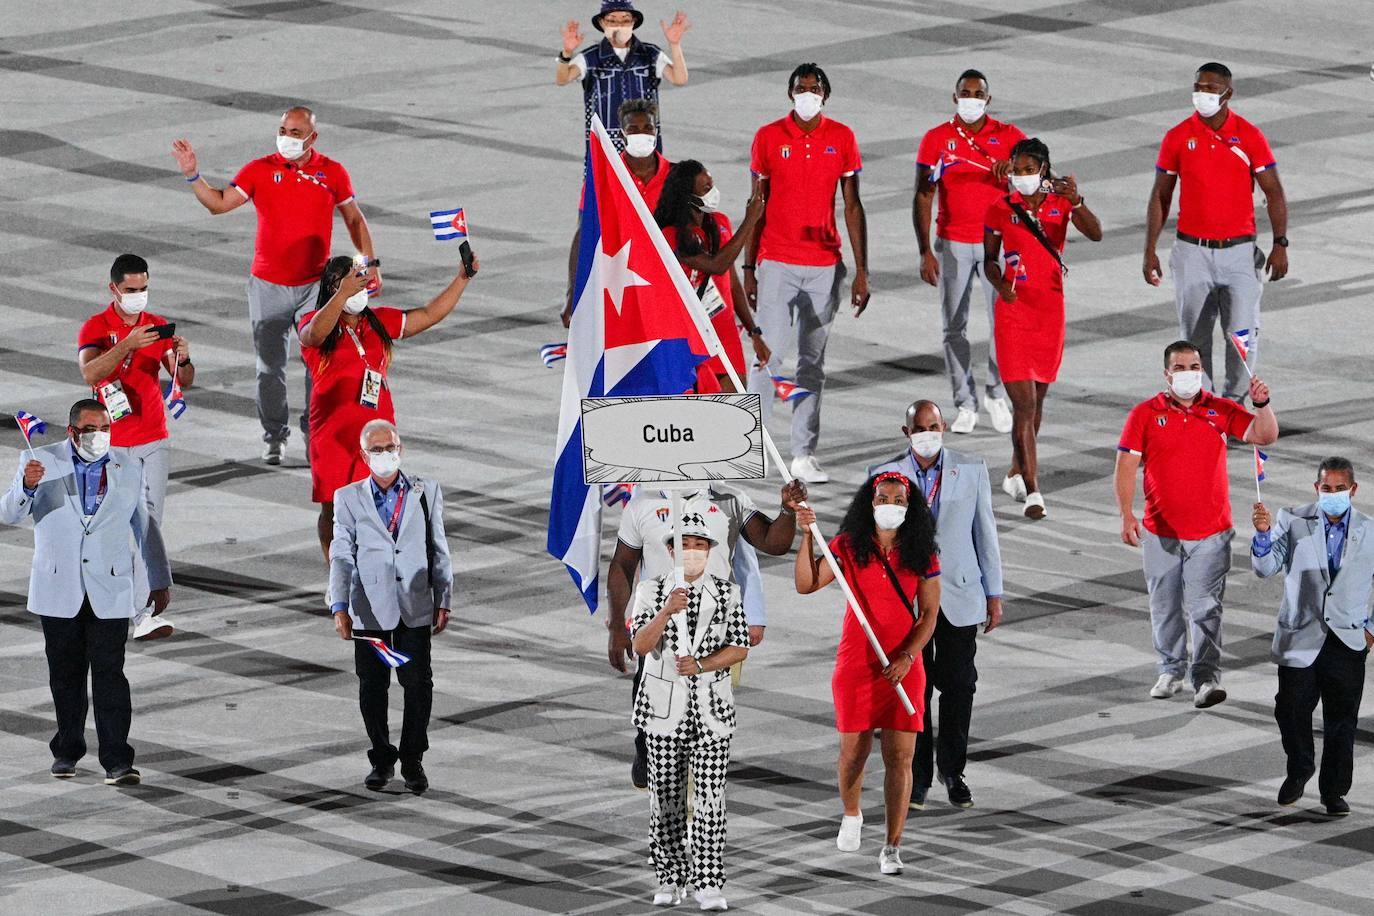 Mijain López y Yaima Pérez, abanderados de Cuba, encabezan la delegación durante la ceremonia de inauguración de los Juegos Olímpicos de Tokio 2020. Foto: Martin Bureau (AFP).